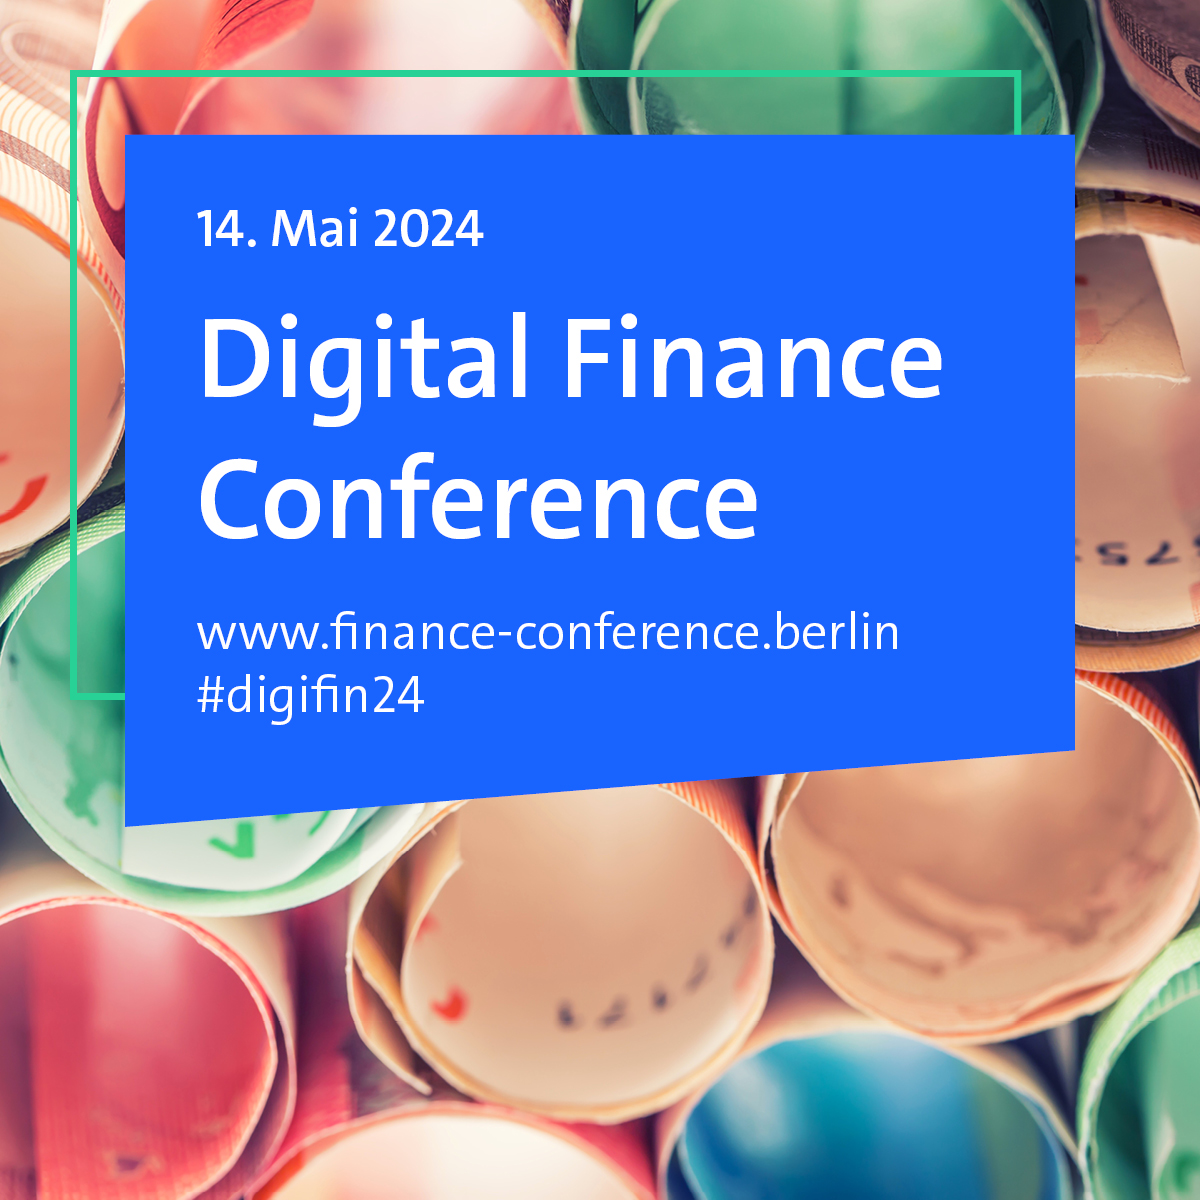 Die #digifin24 steht vor der Tür! Von #KI bis #OpenFinance: Mit 500 Teilnehmenden und 60 hochkarätigen Speakerinnen und Speakern bietet die Digital Finance Conference 2024 die perfekte Plattform für Innovation, Inspiration und Networking. Tickets ➡️ finance-conference.berlin/de